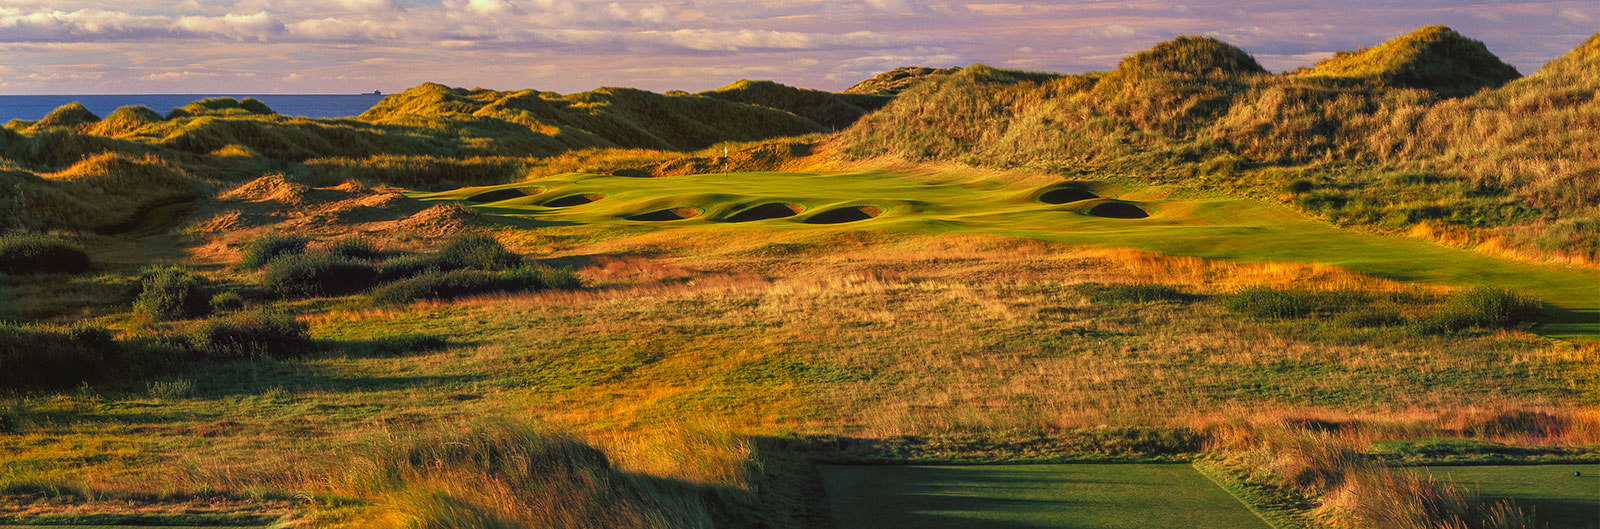 Stunning Links Course at Trump Golf Scotland near Aberdeen